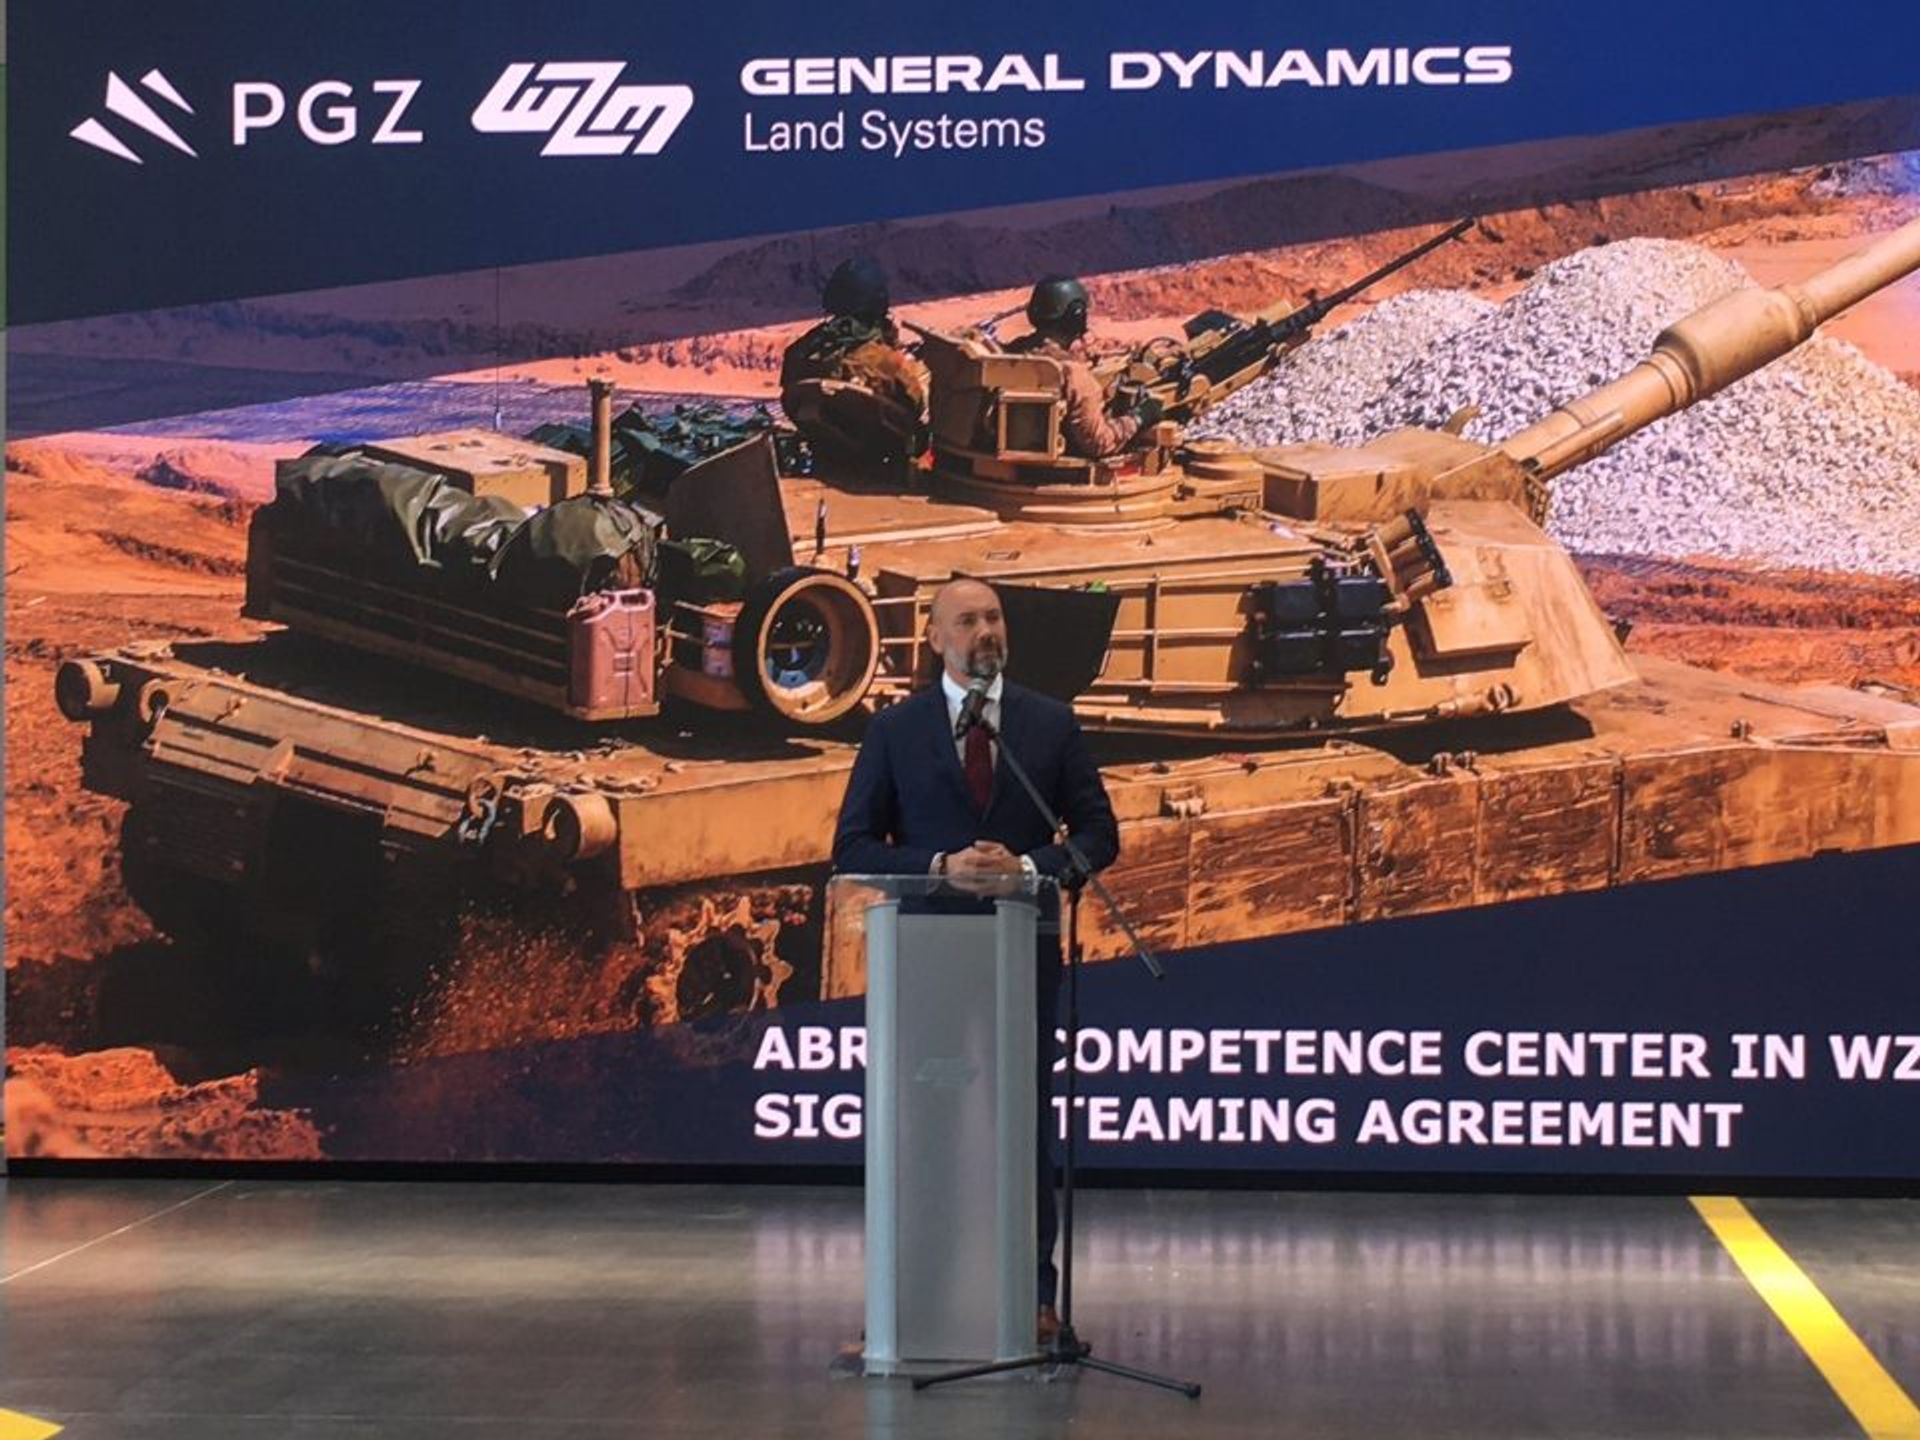 Centrum Kompetencyjne Czołgów Abrams powstanie w Poznaniu